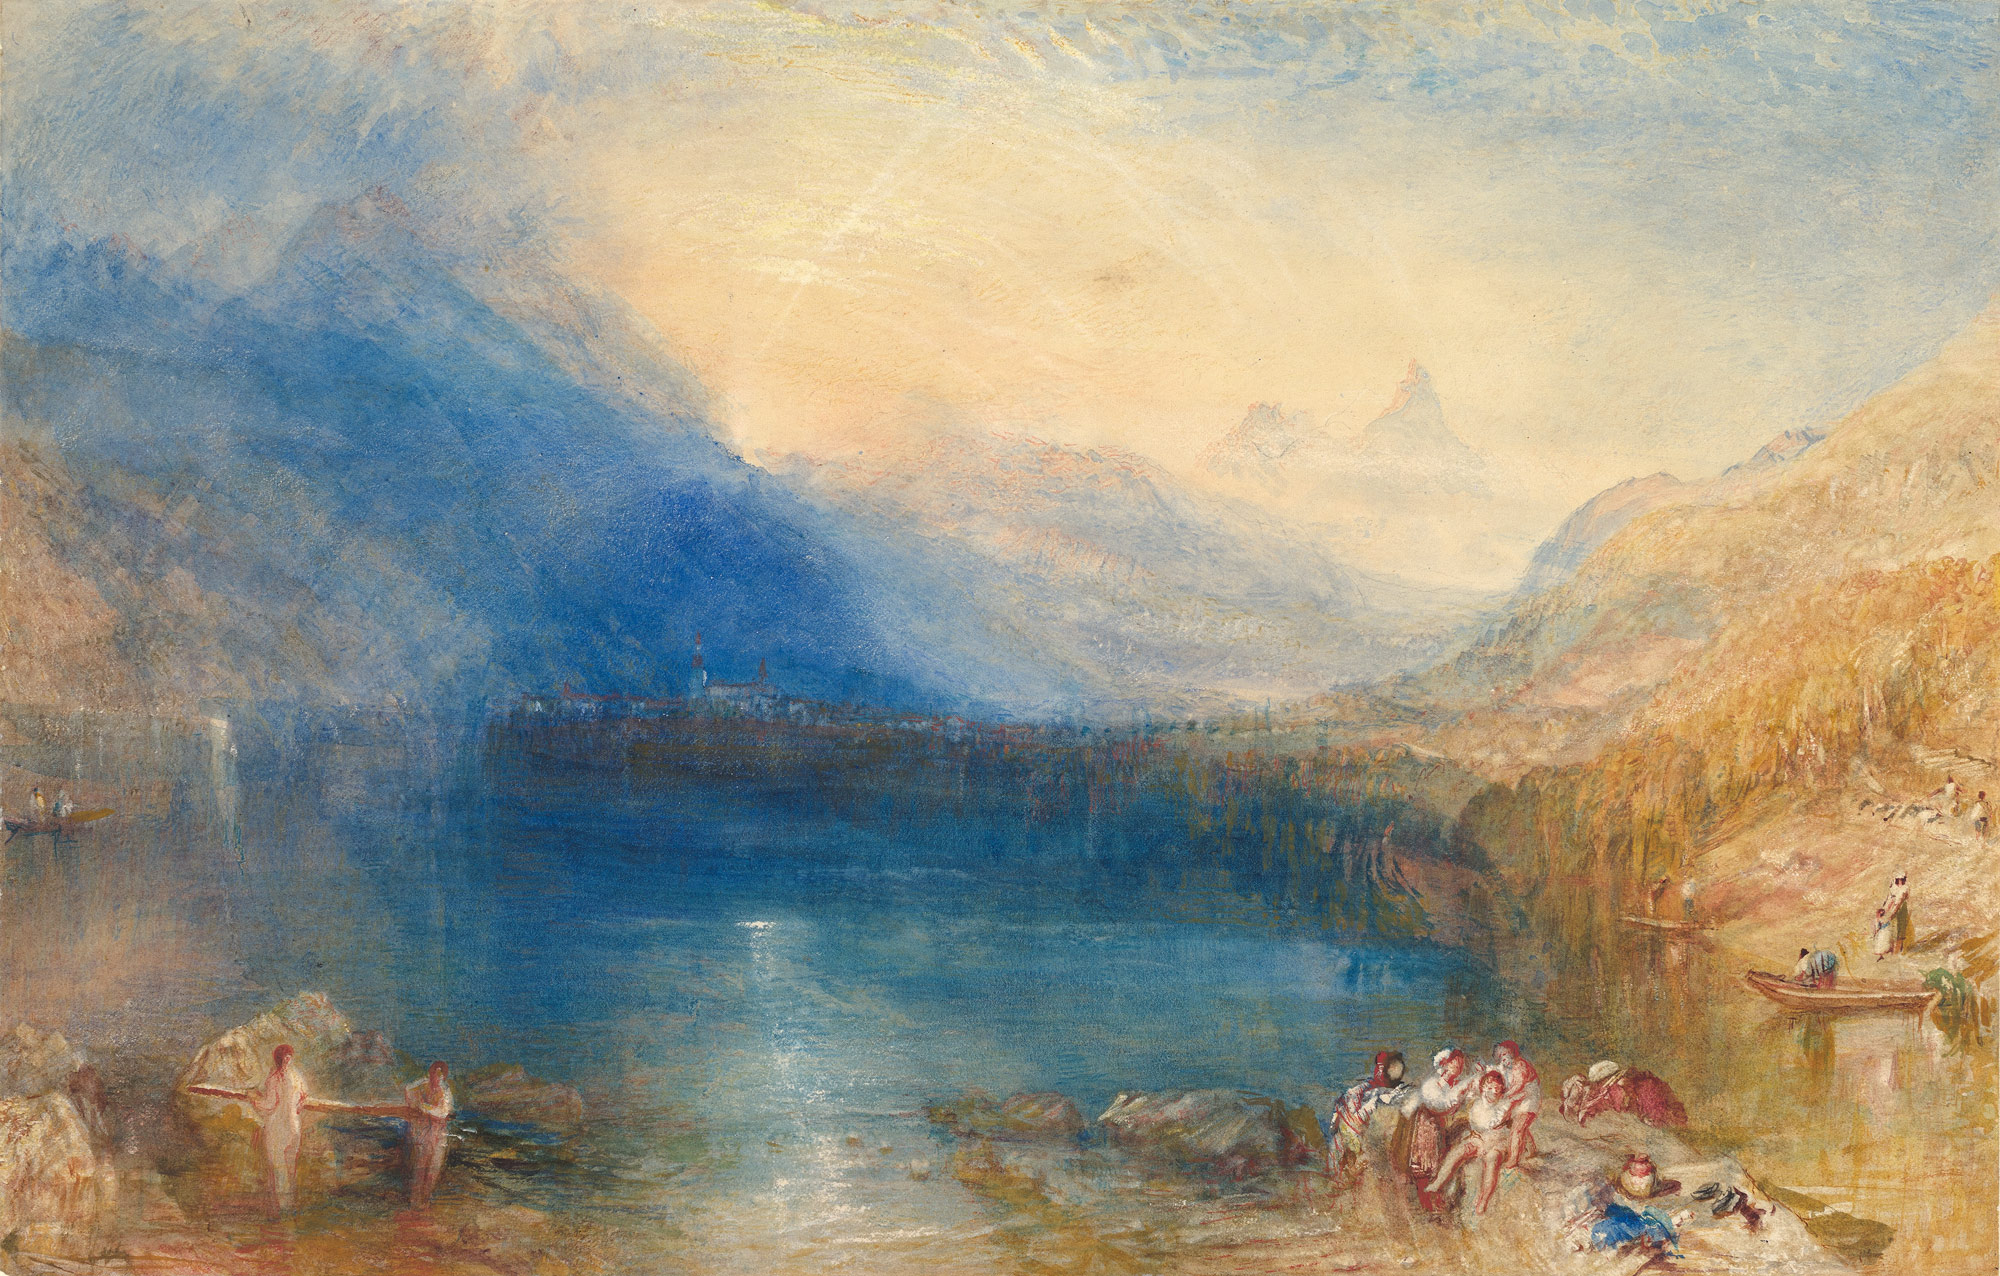 ツーク湖 by Joseph Mallord William Turner - 1843 - 11 3/4 x 18 3/8 in 